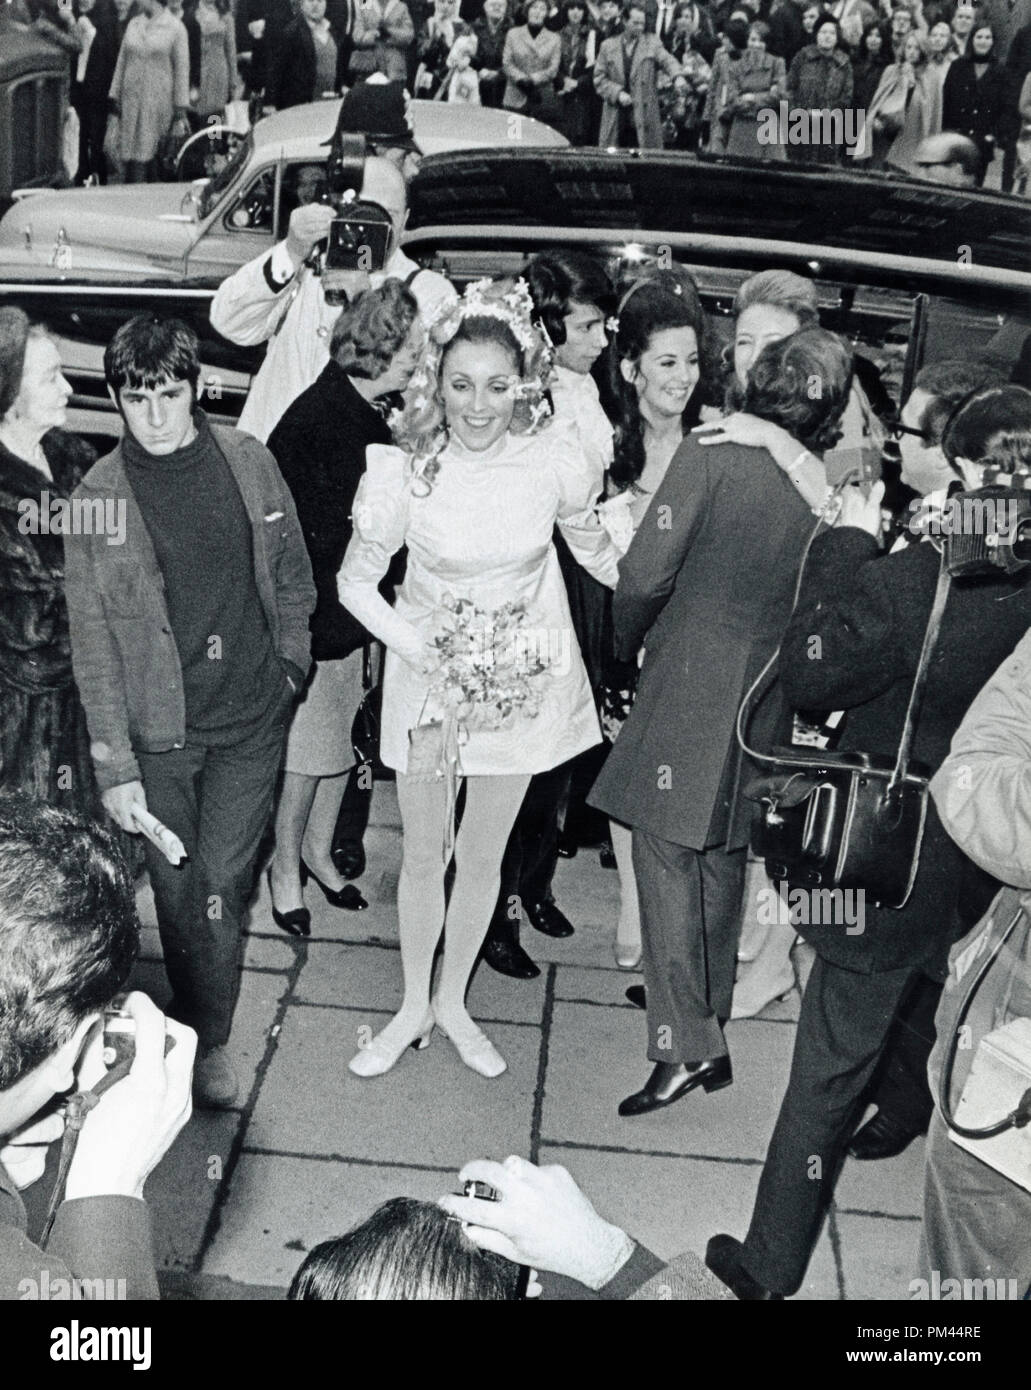 Sharon Tate und Roman Polanski am Tag ihrer Hochzeit, Januar 20,1968. Datei Referenz Nr. 1027_009 THA © GFS/Hollywood Archiv - Alle Rechte vorbehalten. Stockfoto